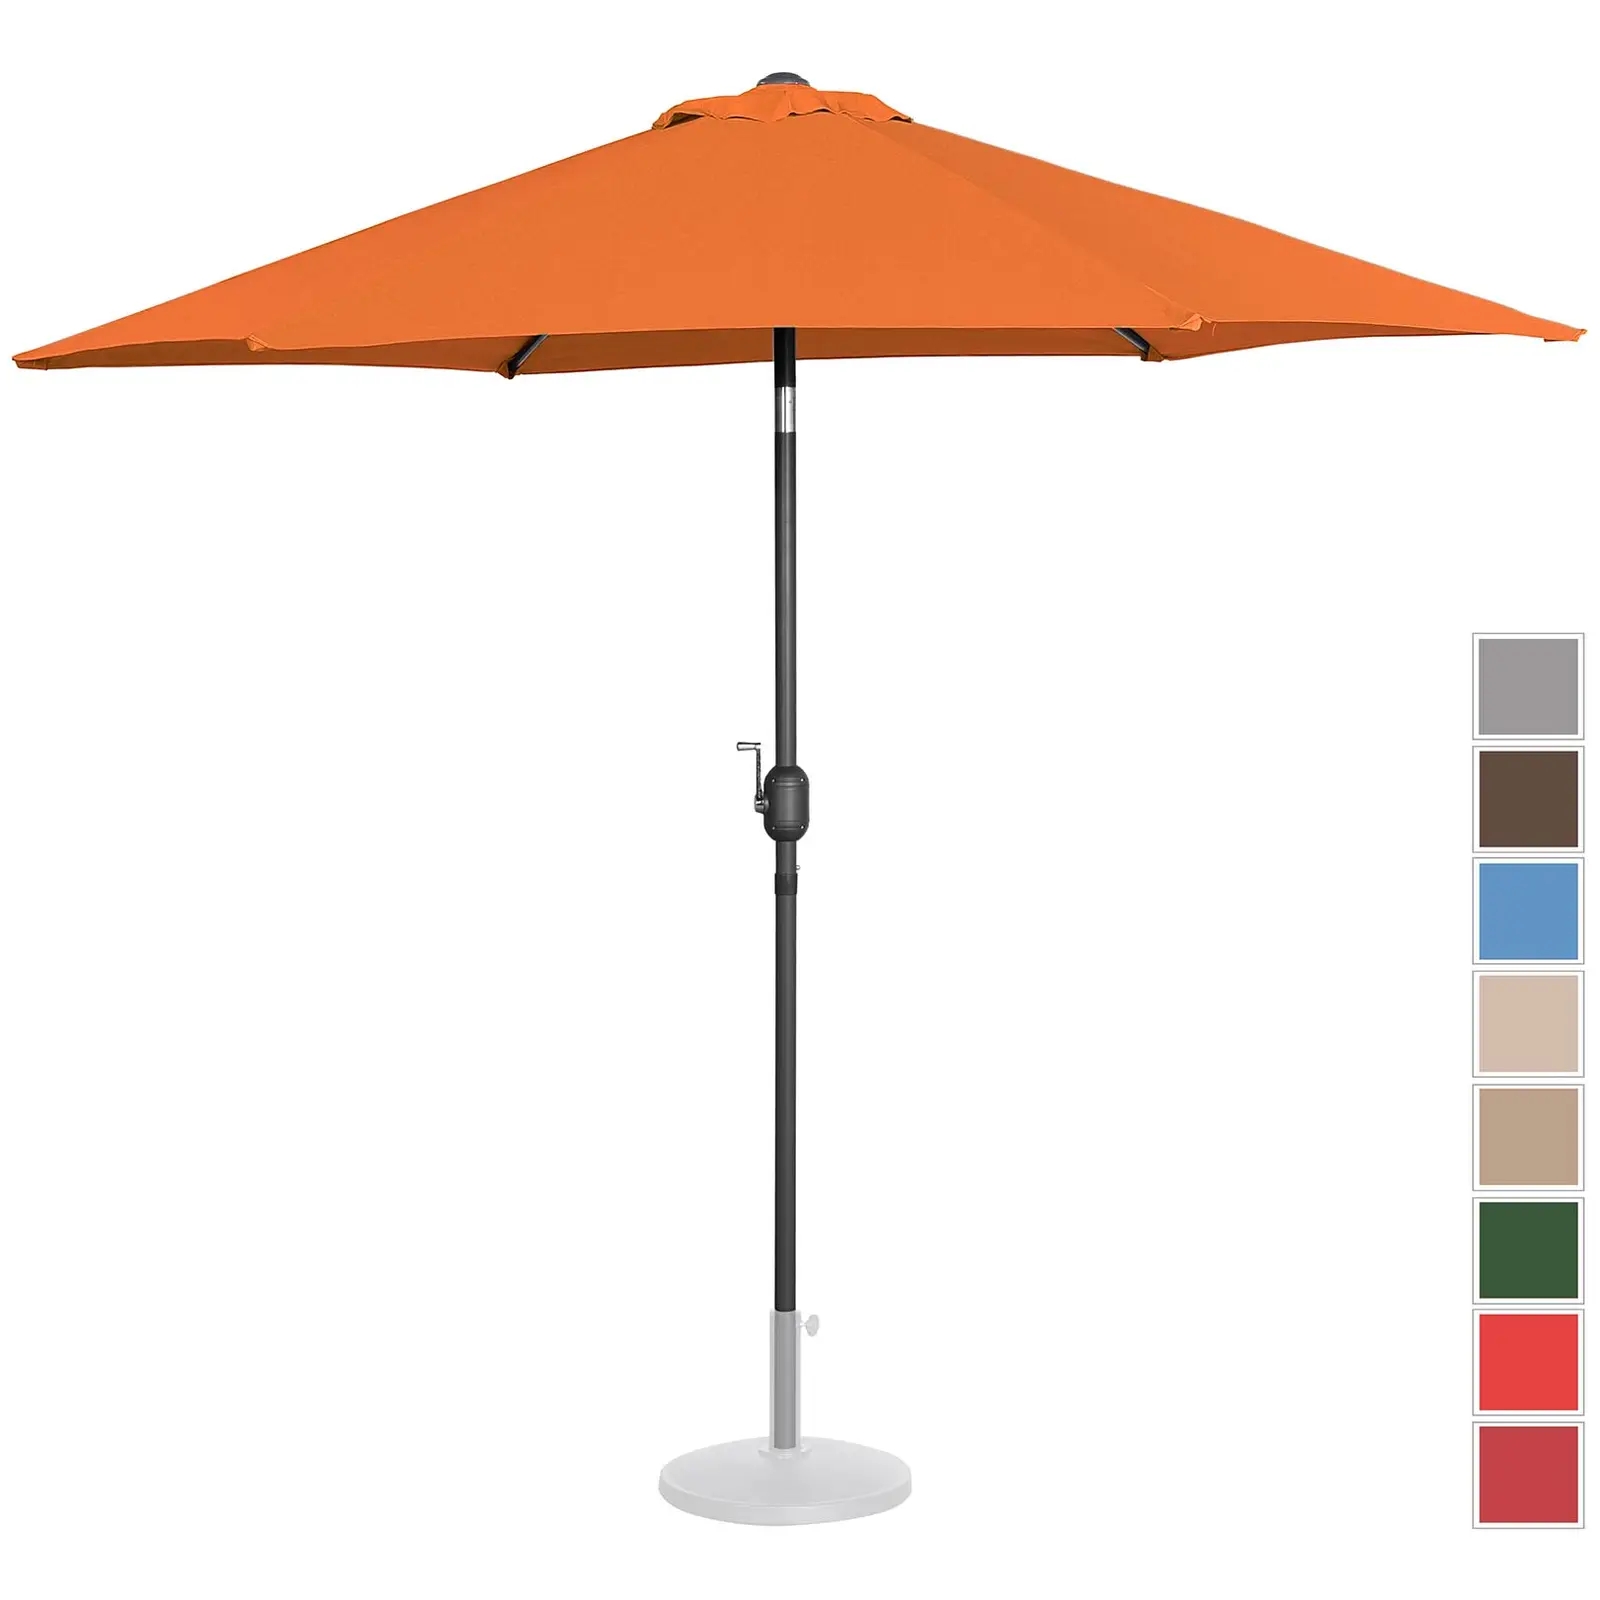 Aurinkovarjo suuri - oranssi - kuusikulmainen - Ø 270 cm - kallistettava